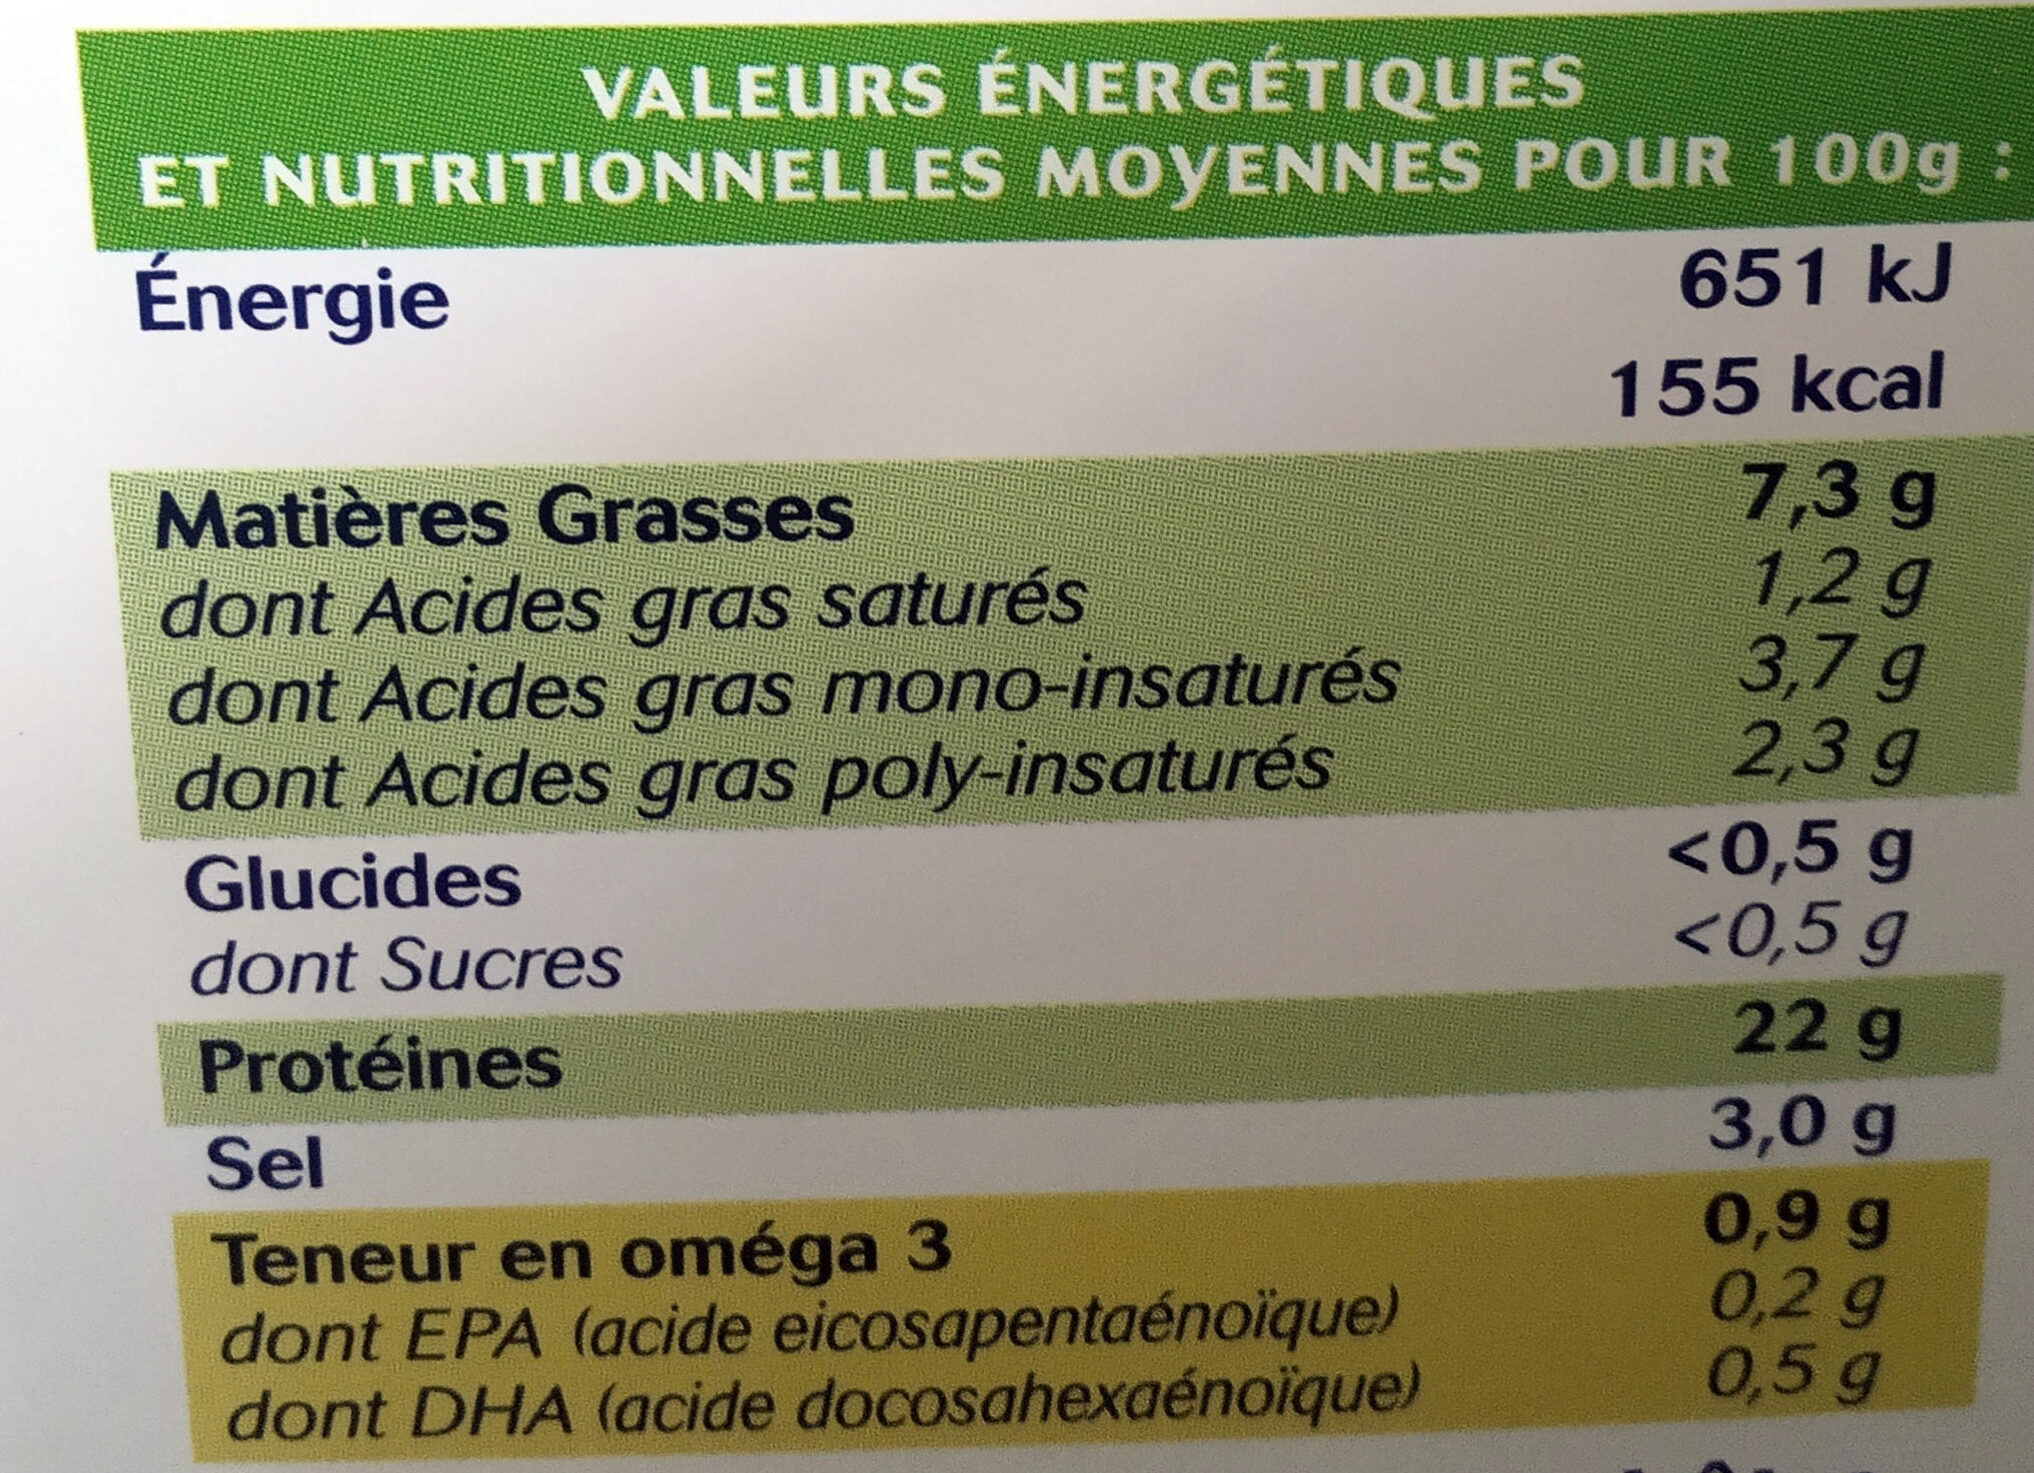 Truite fumée des Pyrénées - Nutrition facts - fr